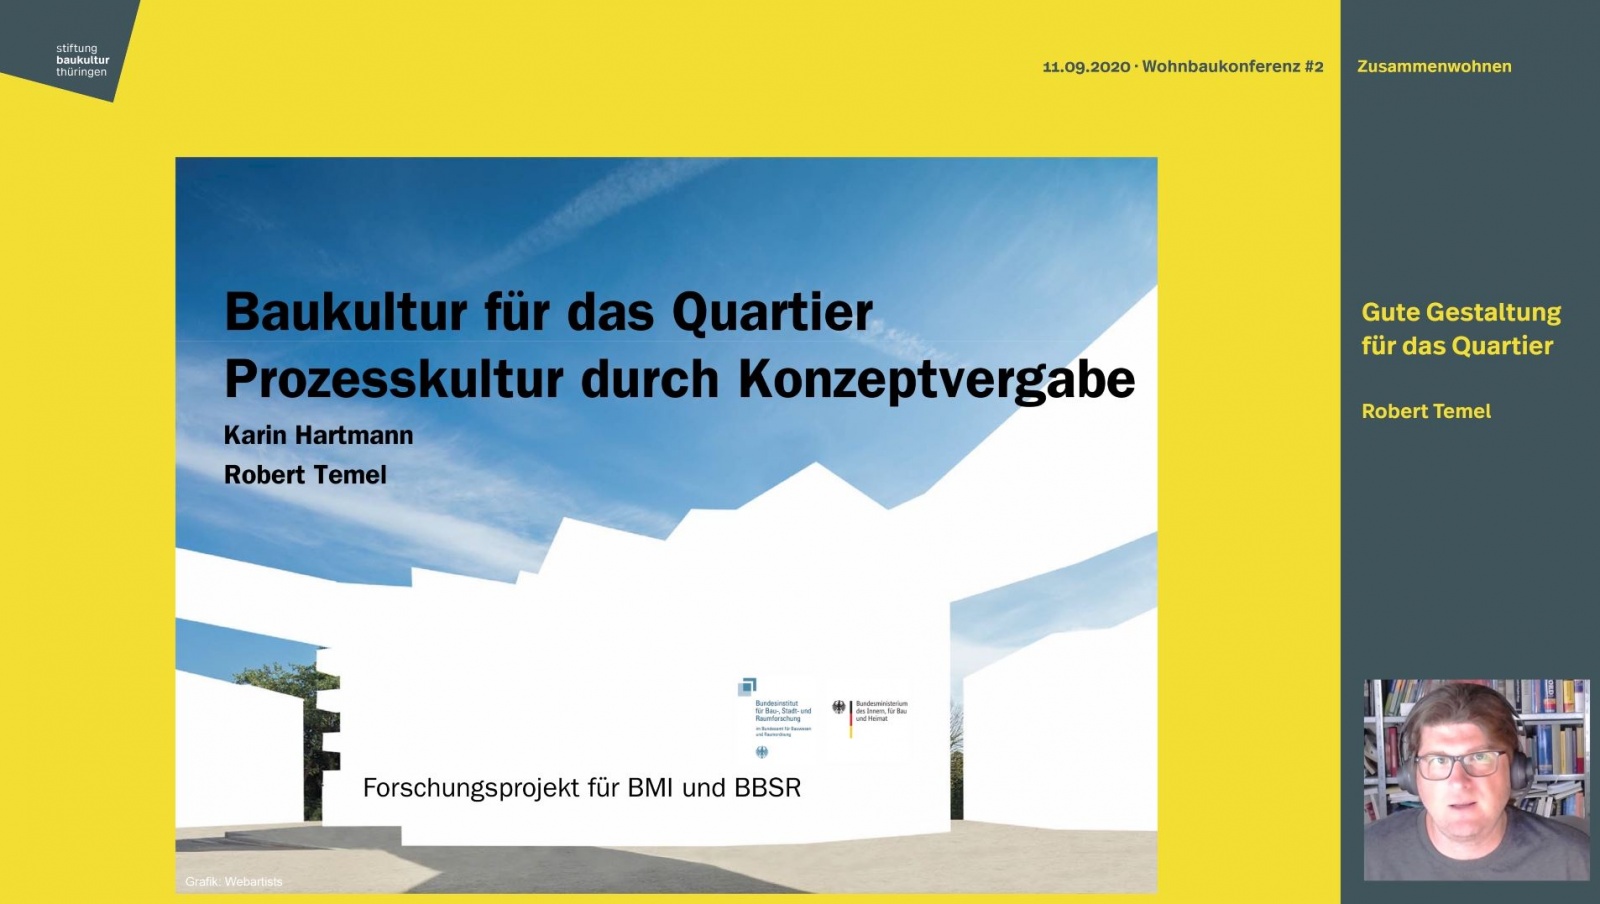 Wohnbaukonferenz »Zusammenwohnen« | VORTRAG »Baukultur für das Quartier«, Figure: Karin Hartmann und Robert Temel